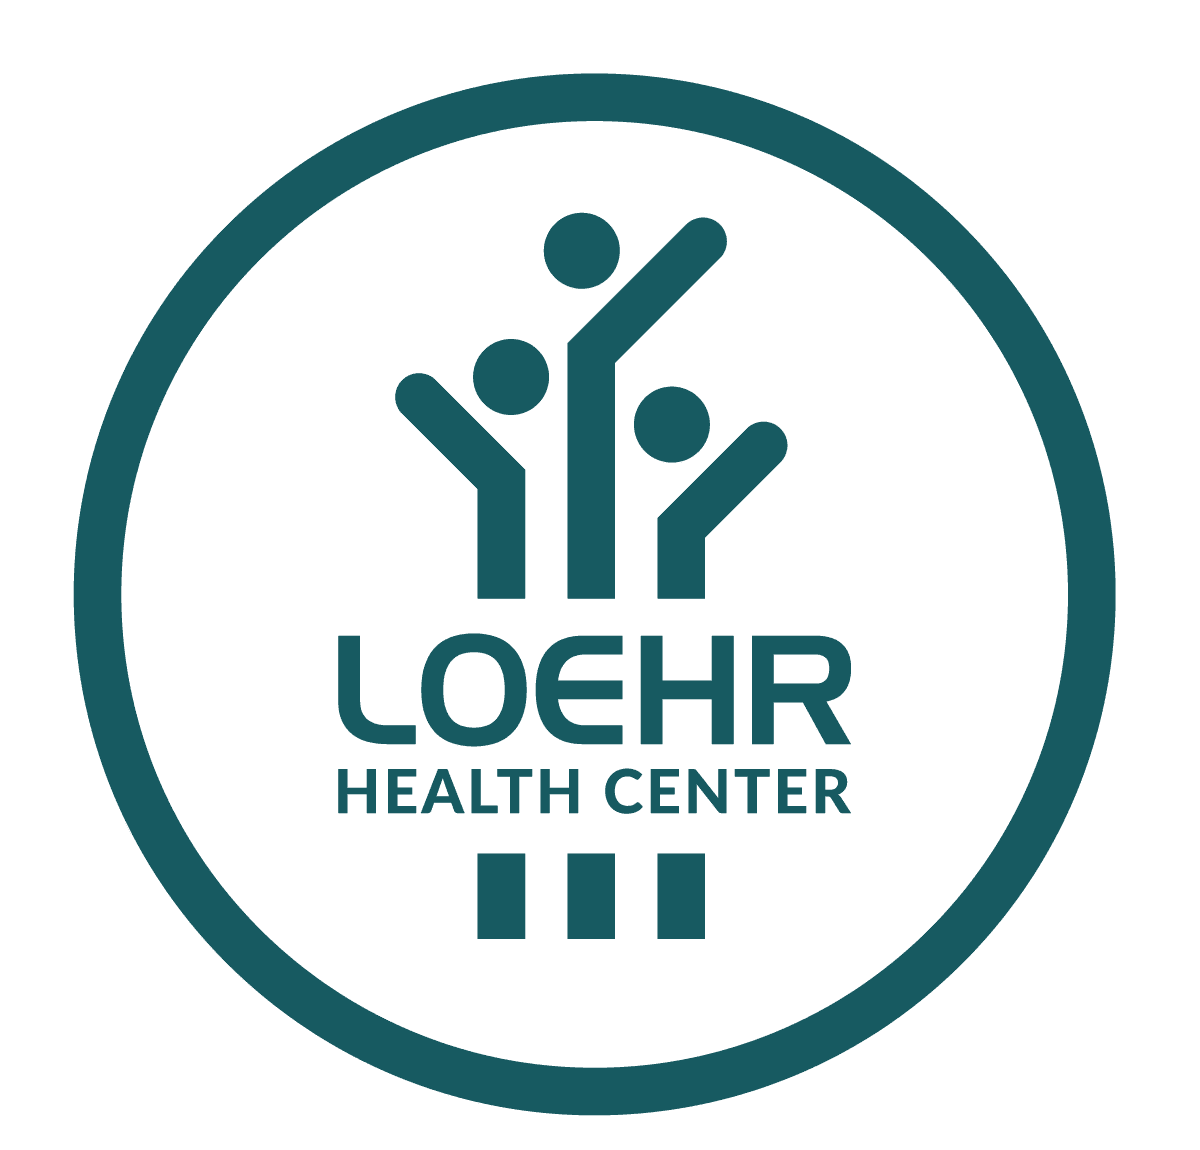 Loehr Health Center logo